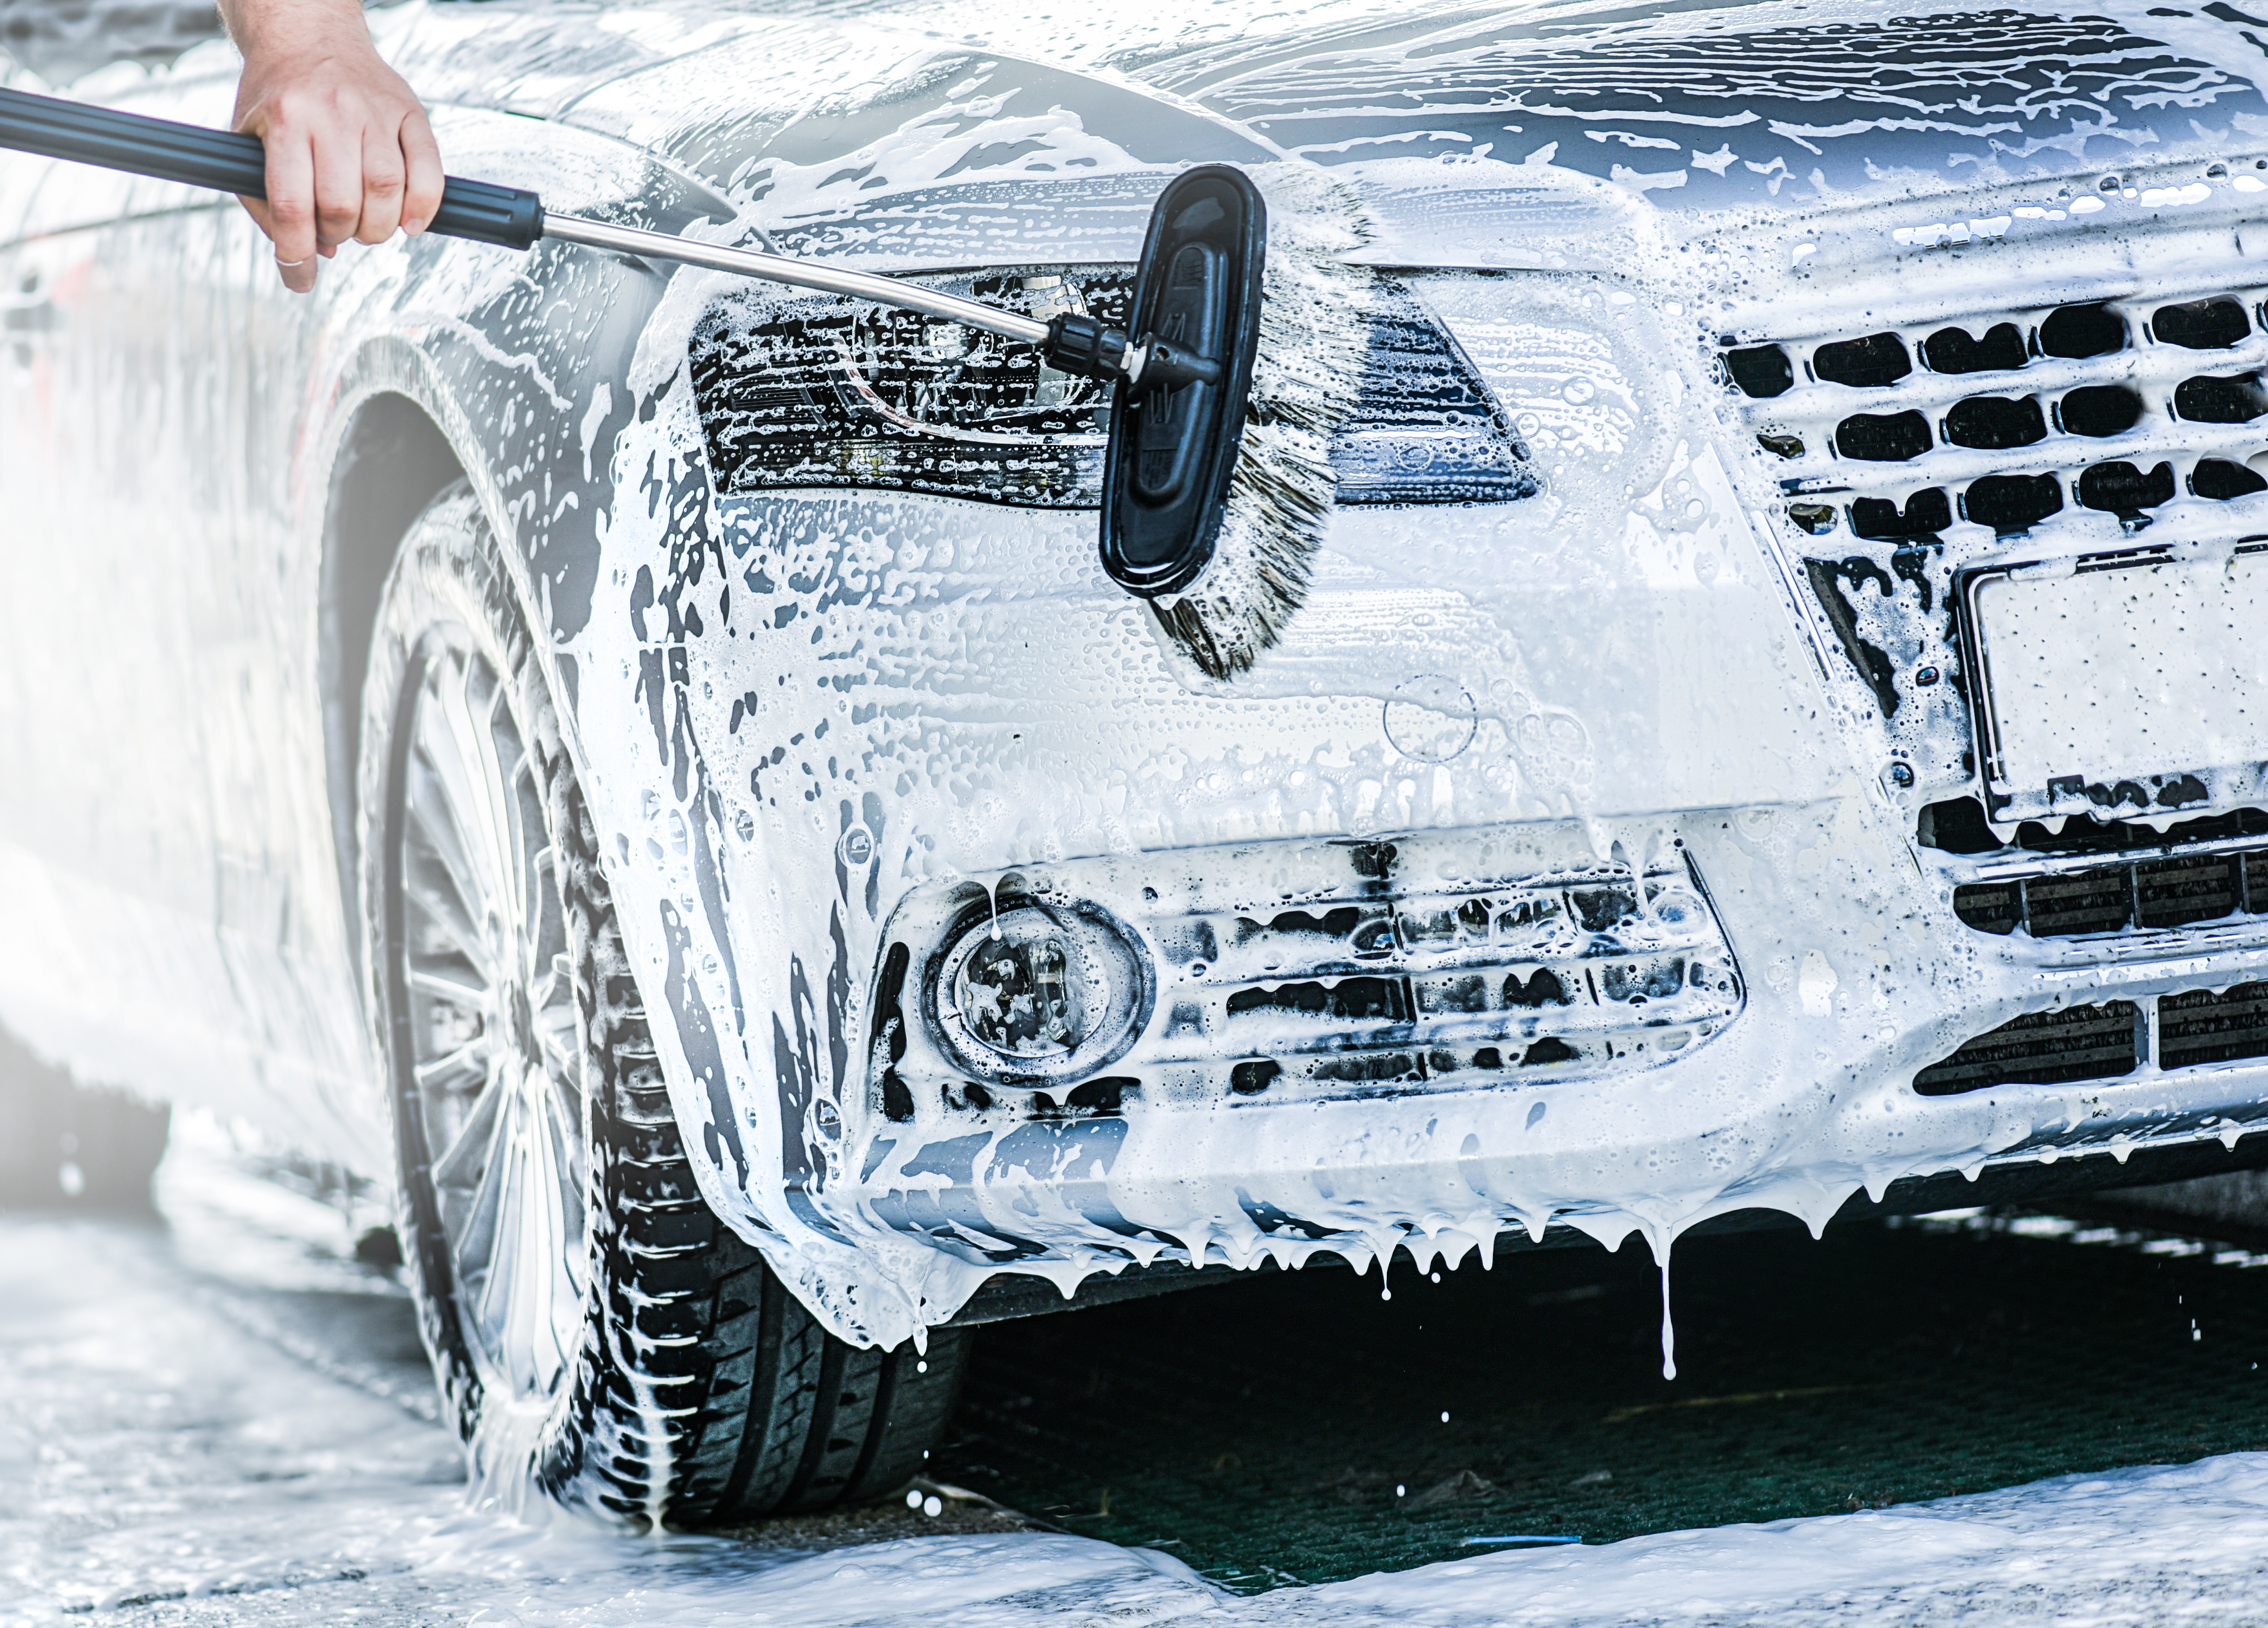 Auto mit einer bürste vom schnee reinigen